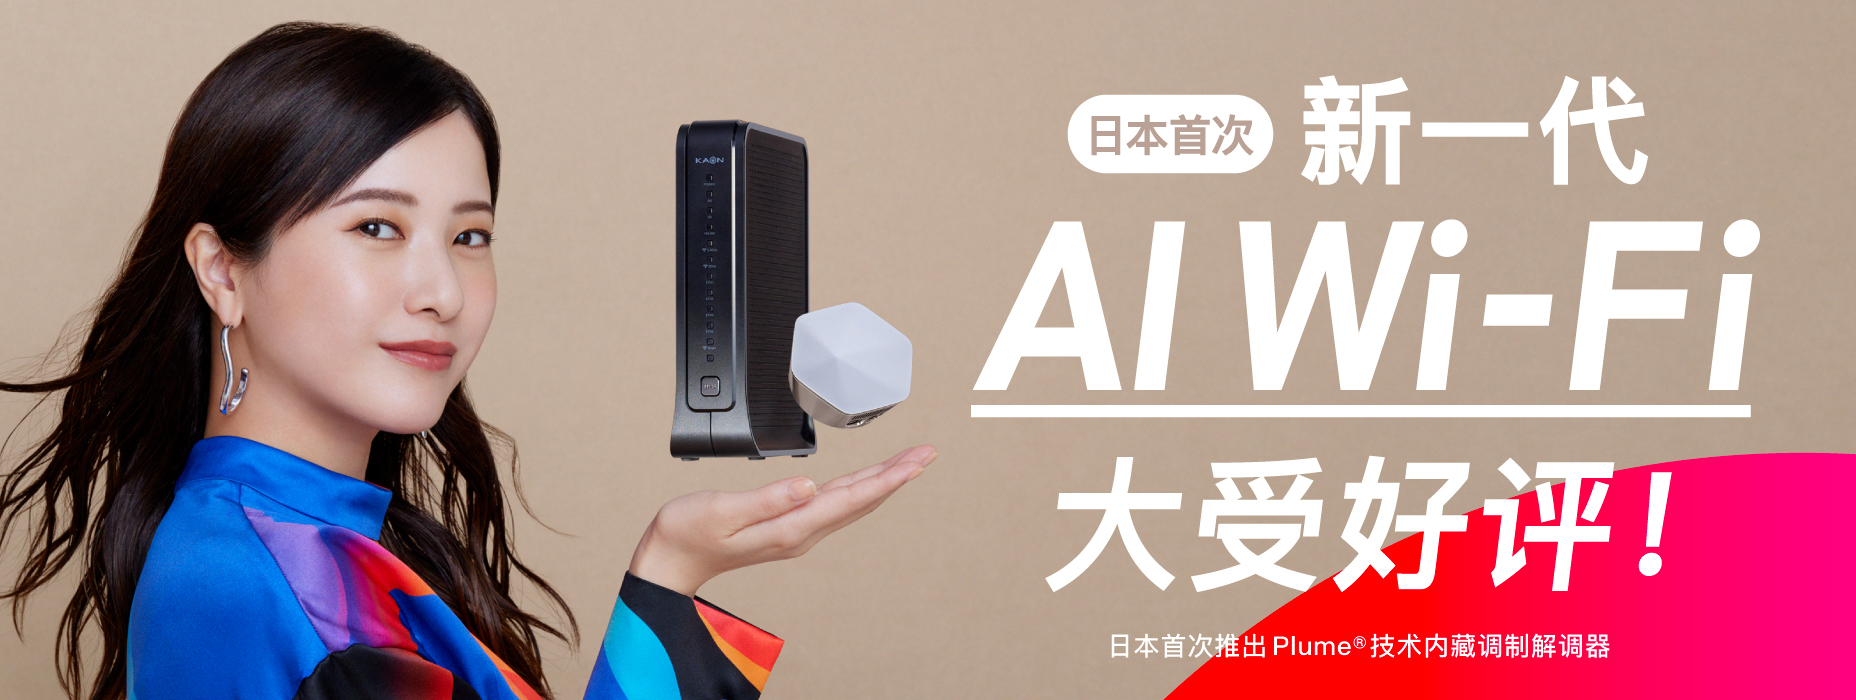 日本首创次世代AI Wi-Fi大受欢迎！ *日本首次销售内置 PLUME® 技术的调制解调器